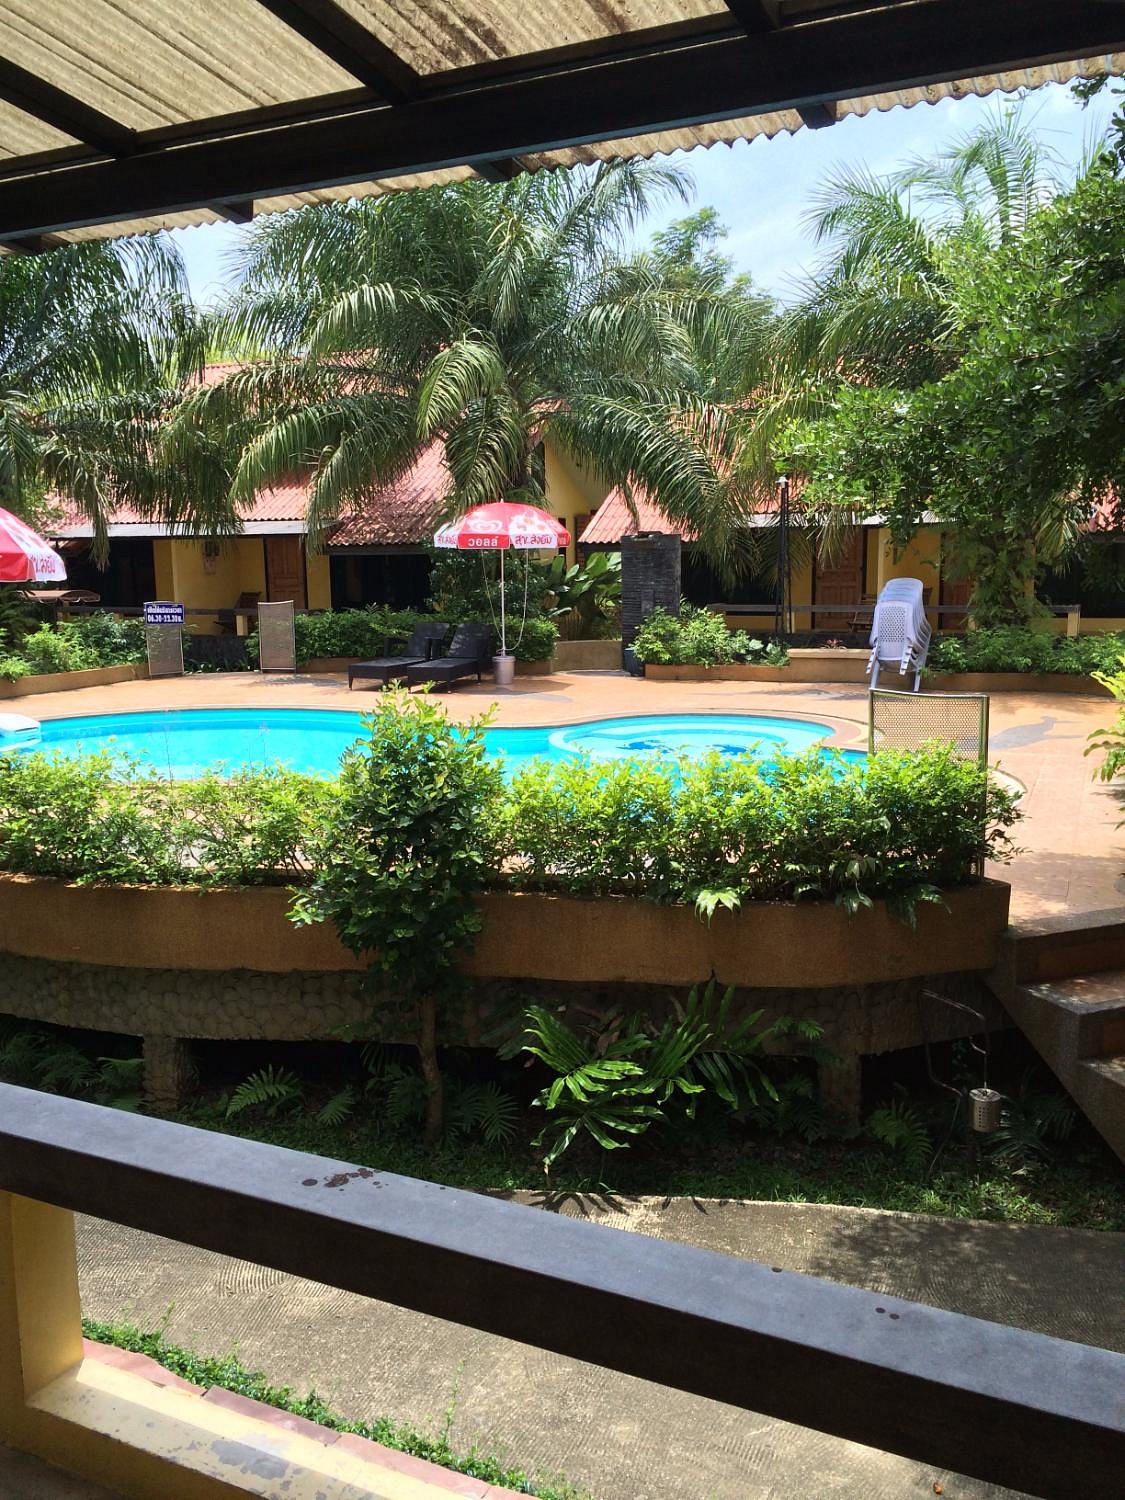 Tanisa Resort Pool Pictures & Reviews - Tripadvisor